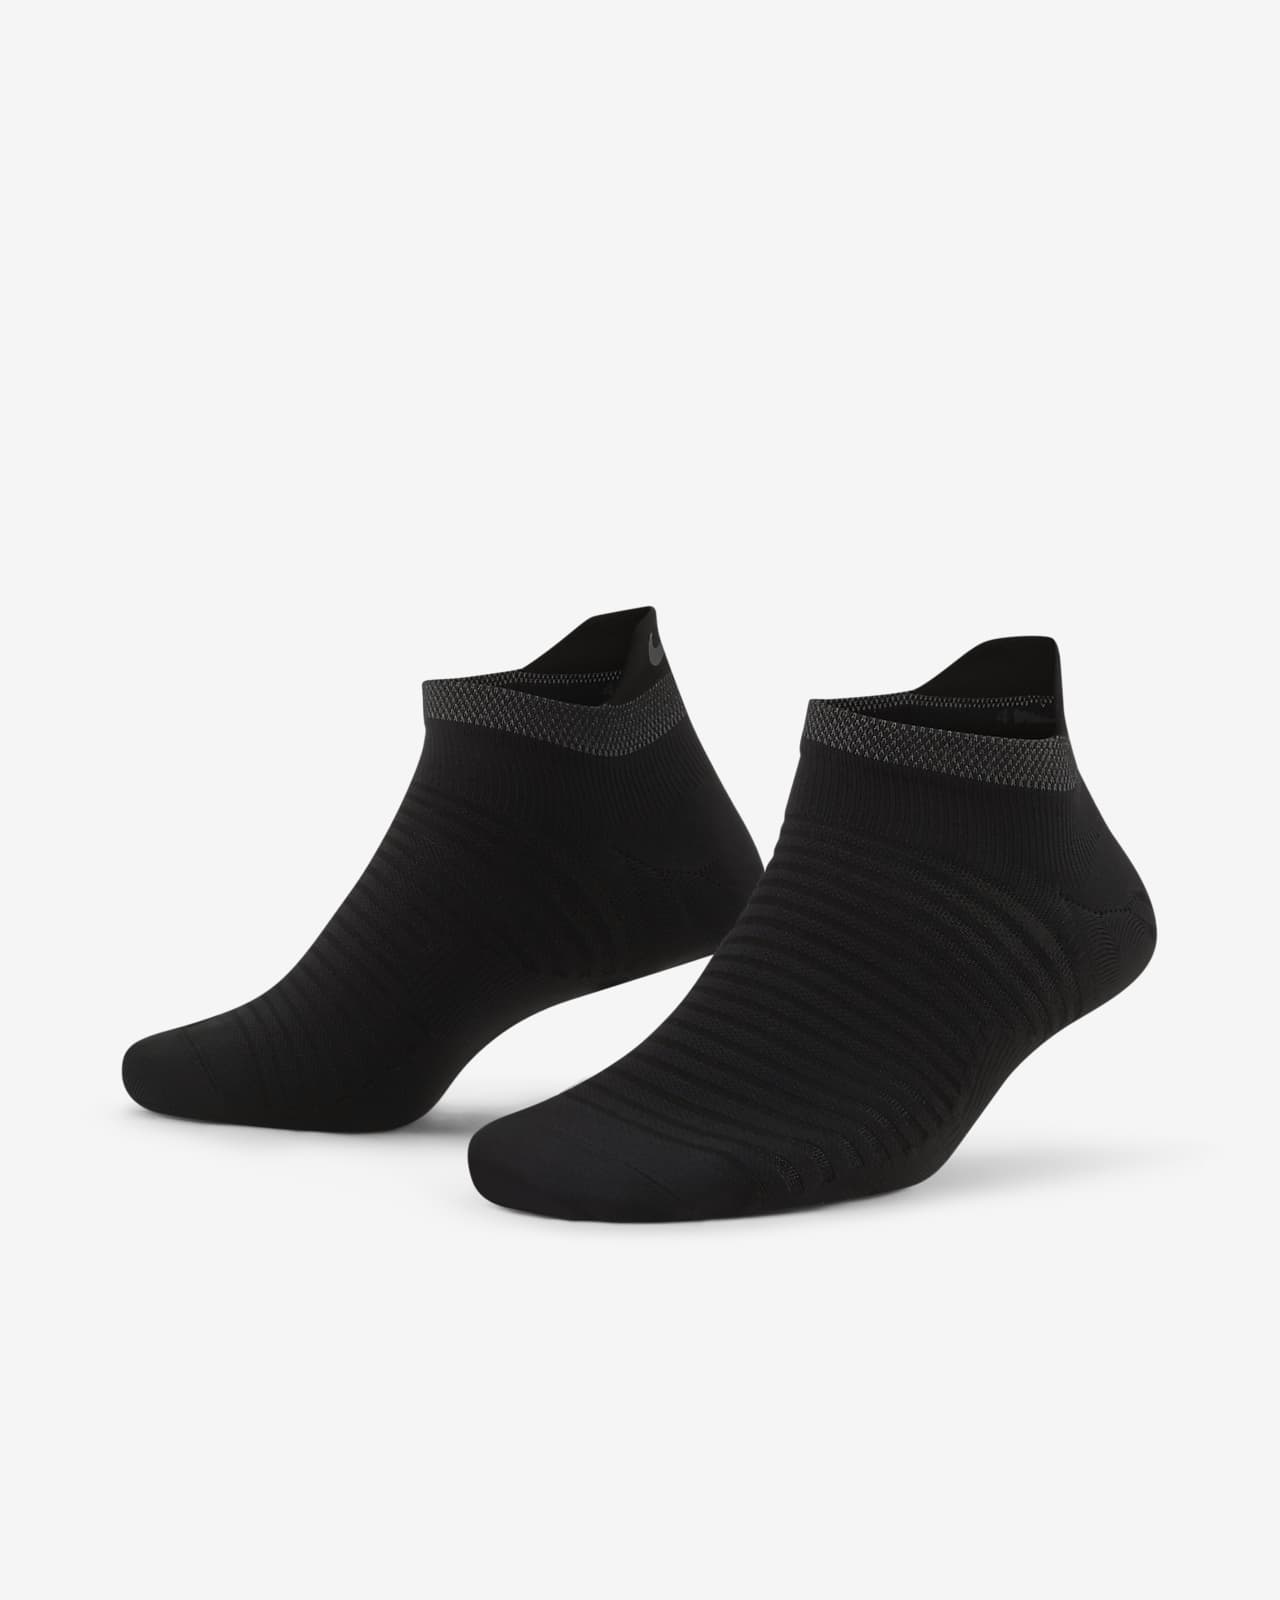 Buy Nike Running socks long online